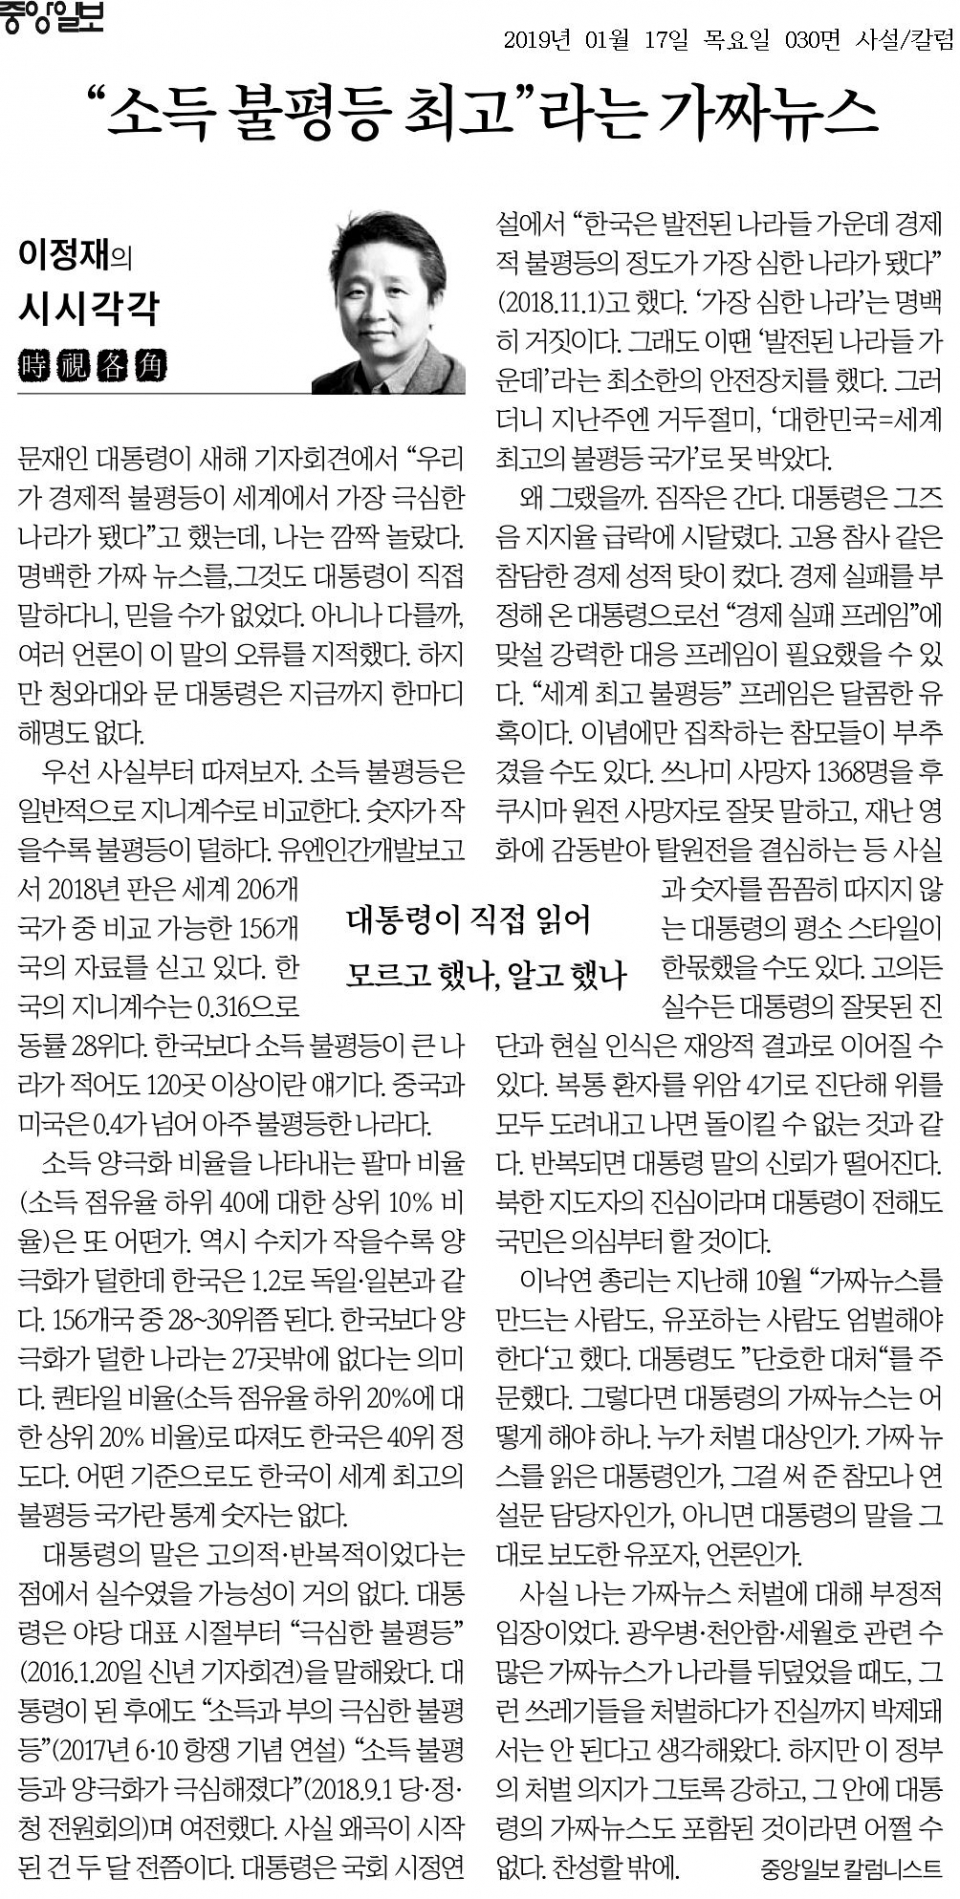 17日 중앙일보 보도.